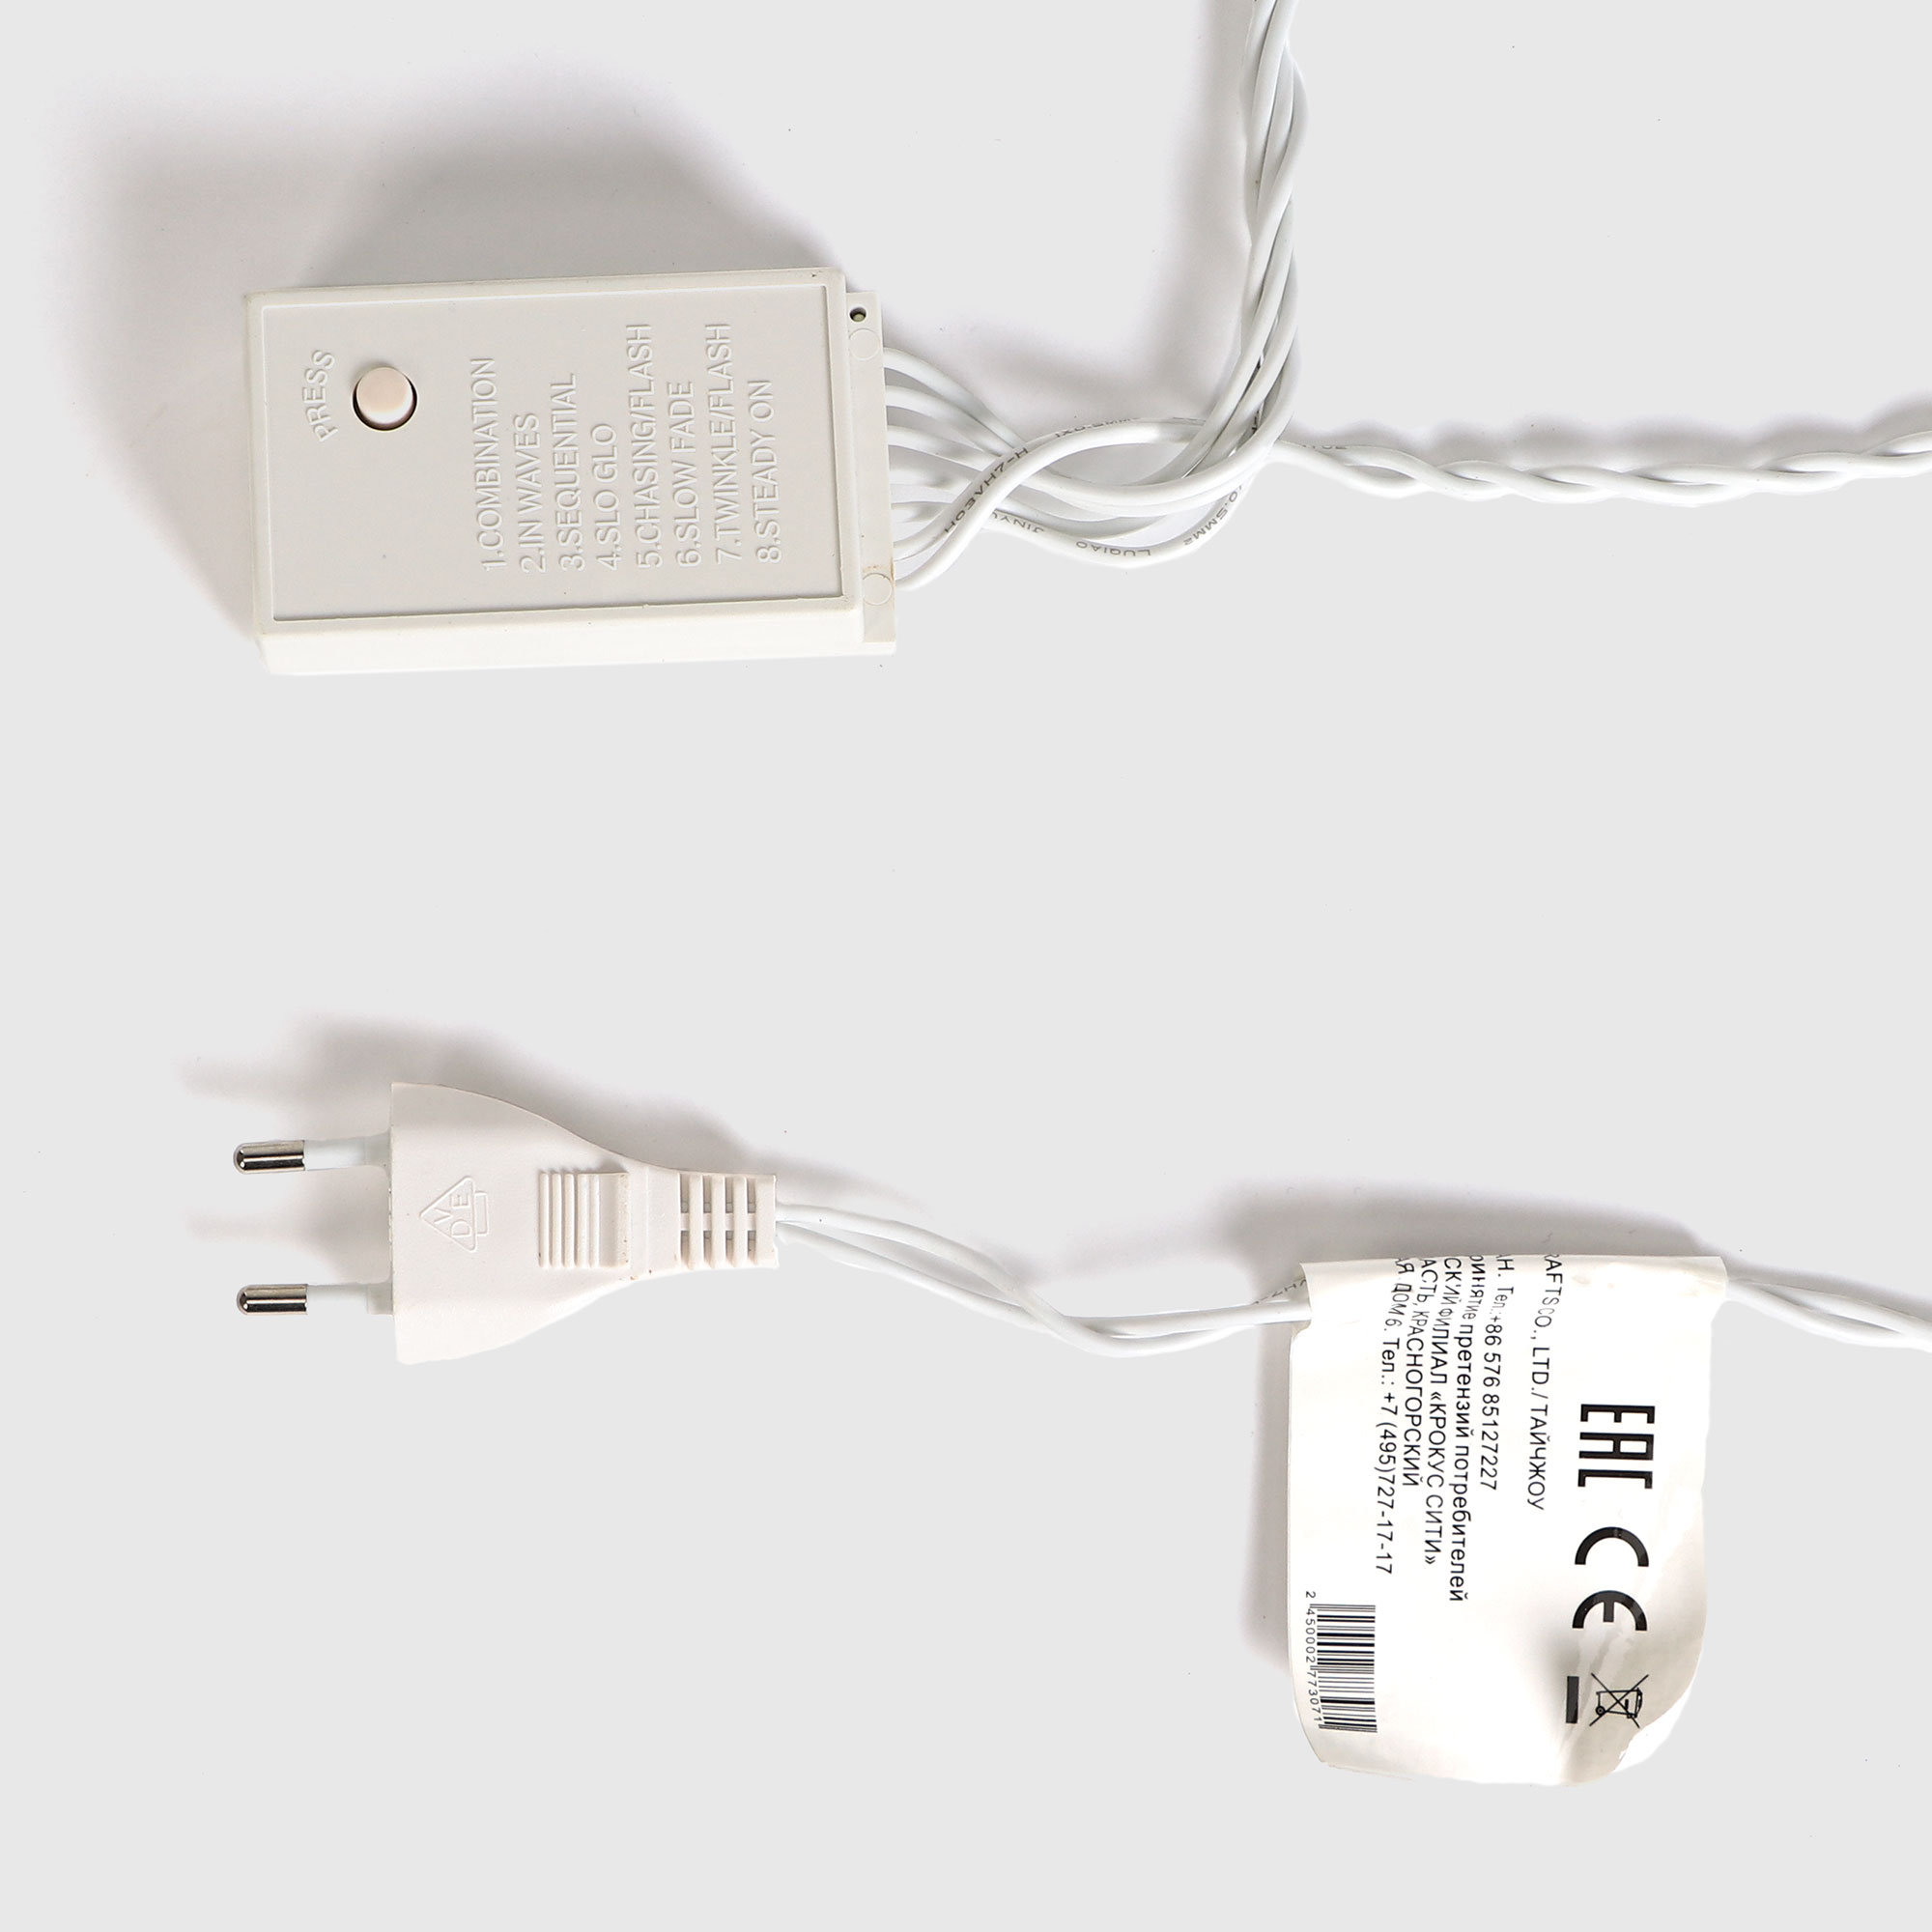 Электрогирлянда для помещений занавес 300 led Reason, цвет белый кабель - фото 6